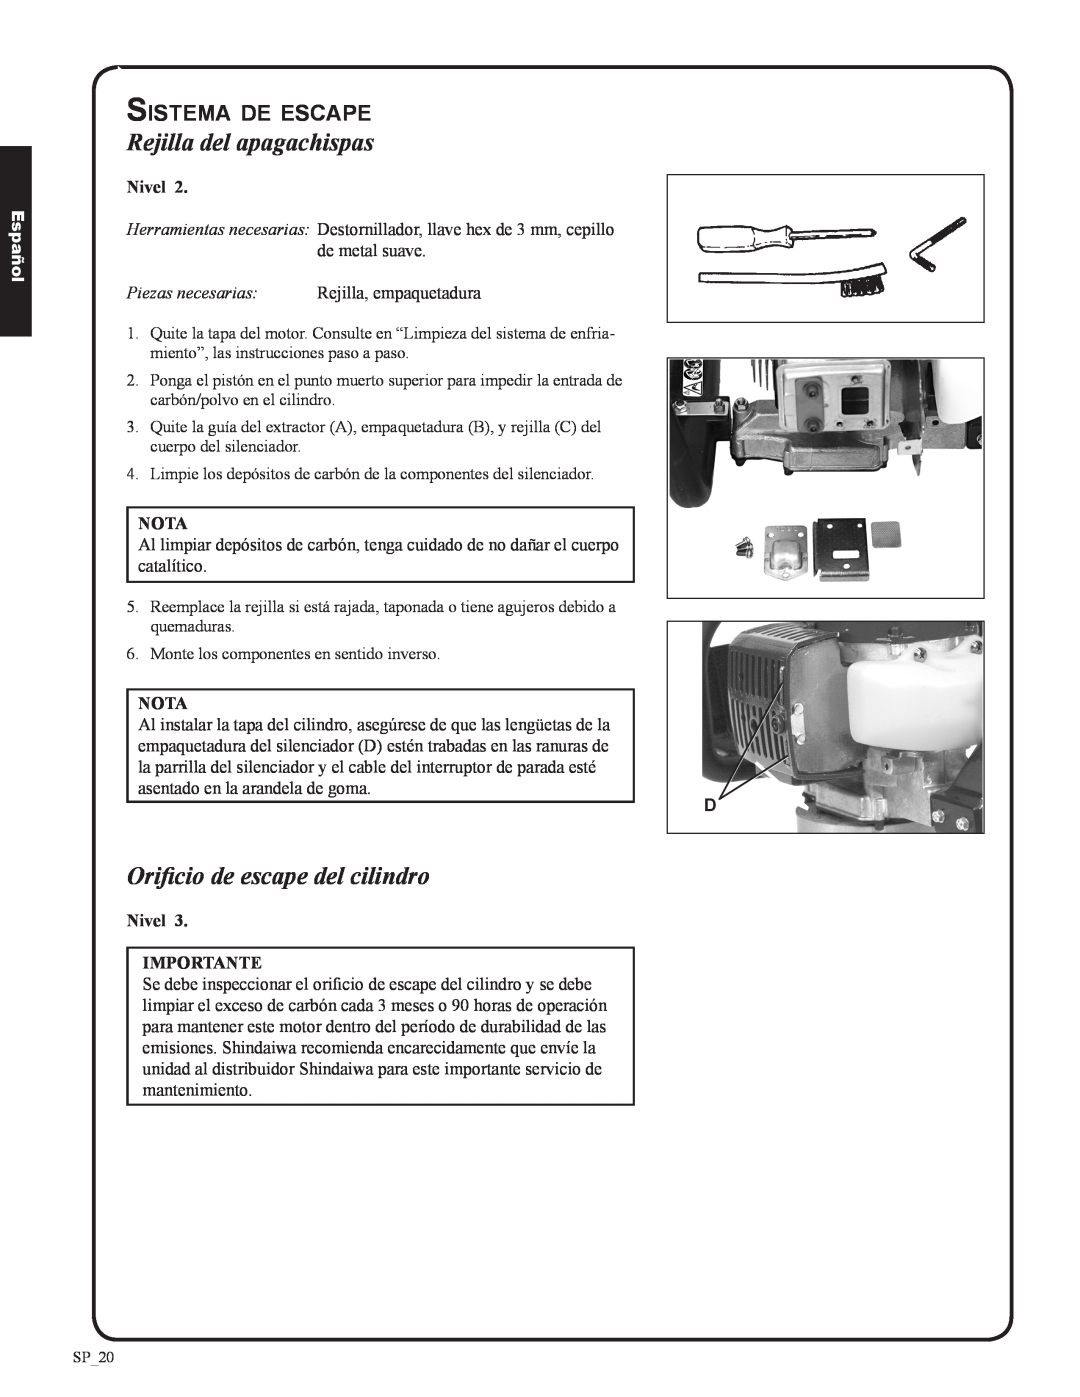 Shindaiwa DH212 Rejilla del apagachispas, Orificio de escape del cilindro, Sistema de escape, Piezas necesarias, Español 